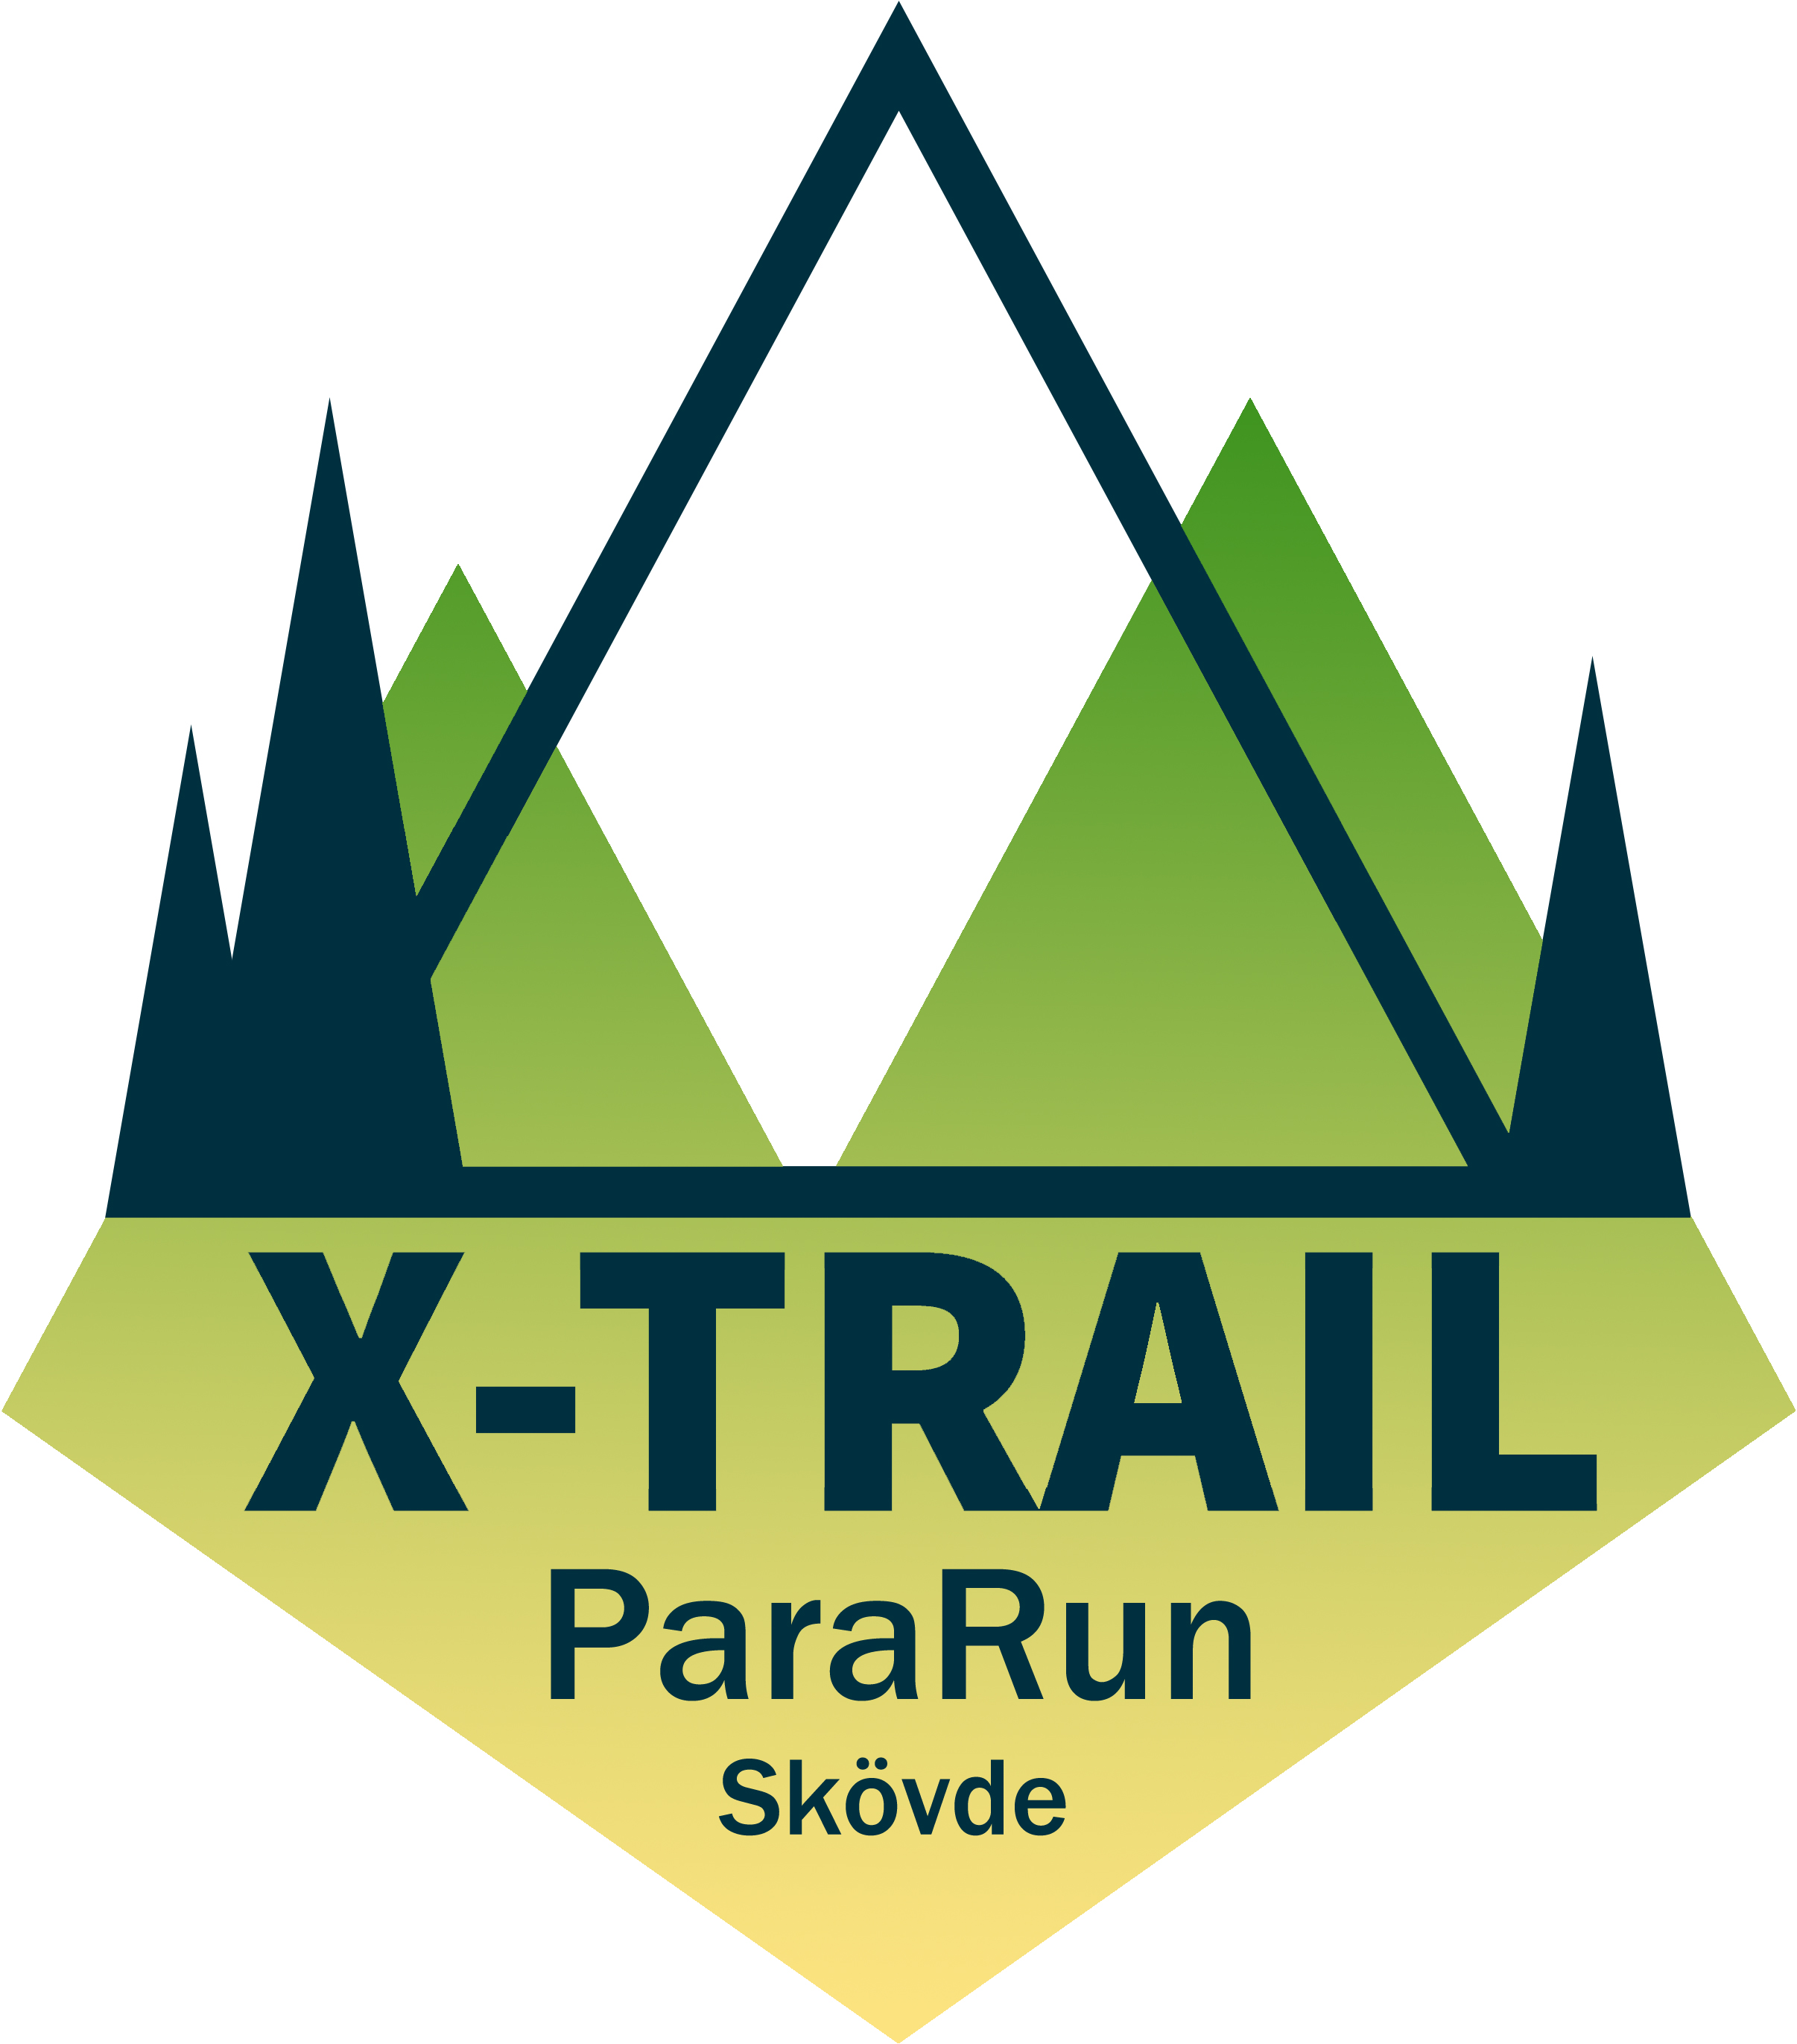 Billingen x-trail ParaRuns logga i färgerna gula och grön